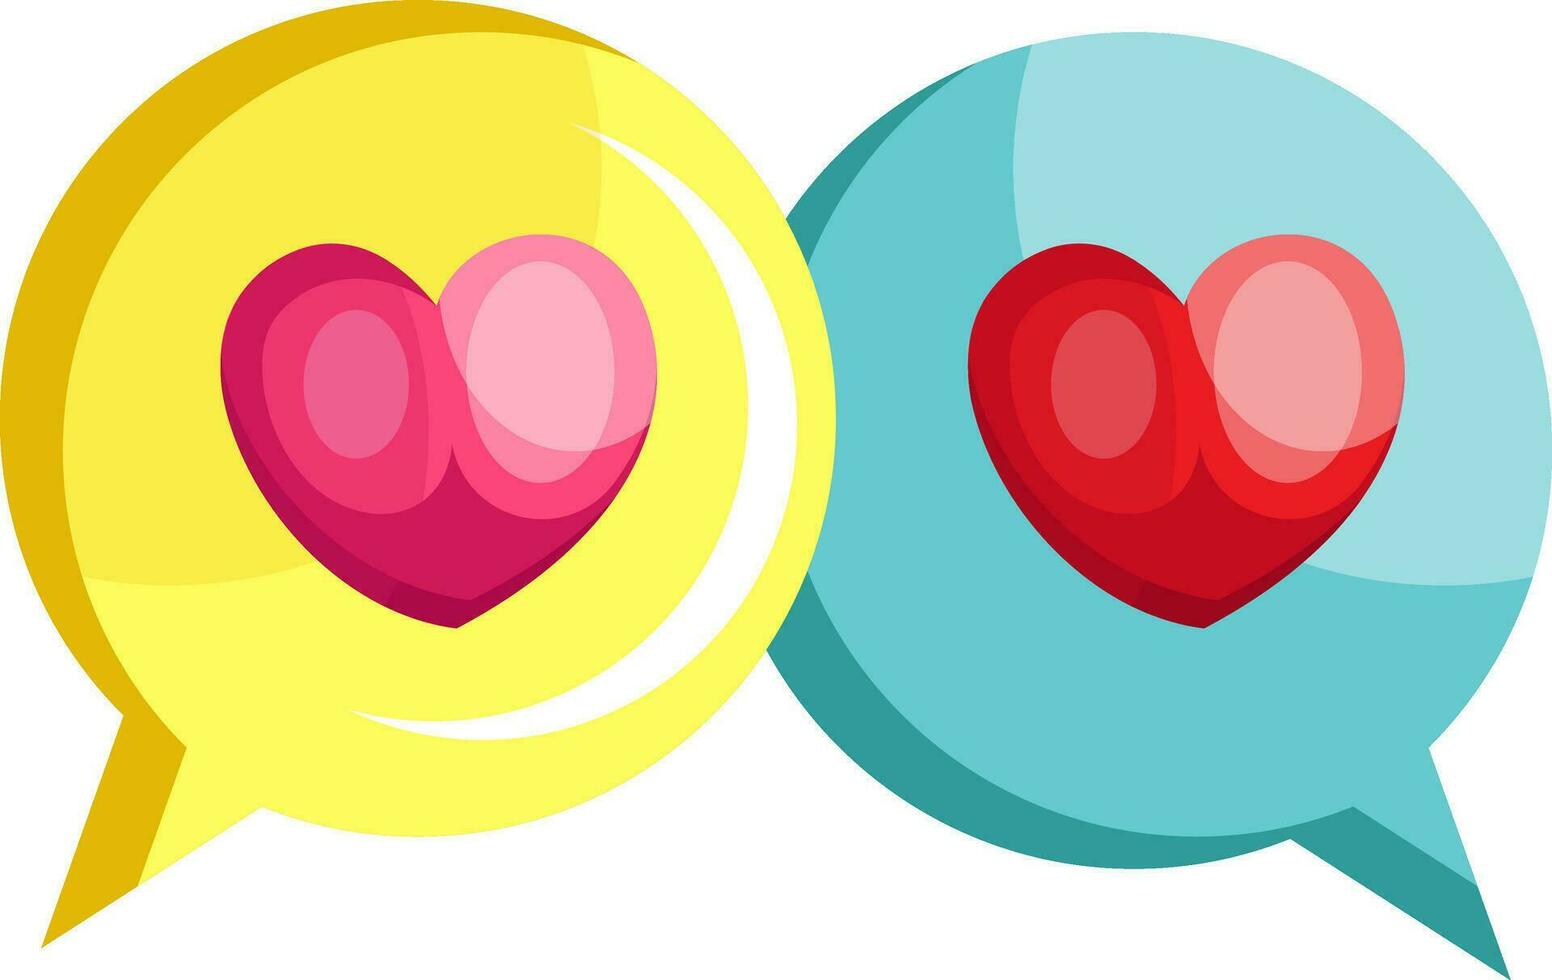 Gelb Plaudern Blase mit ein Rosa Herz und Blau Plaudern Blase mit ein rot Herz Vektor Illustration auf Weiß Hintergrund.